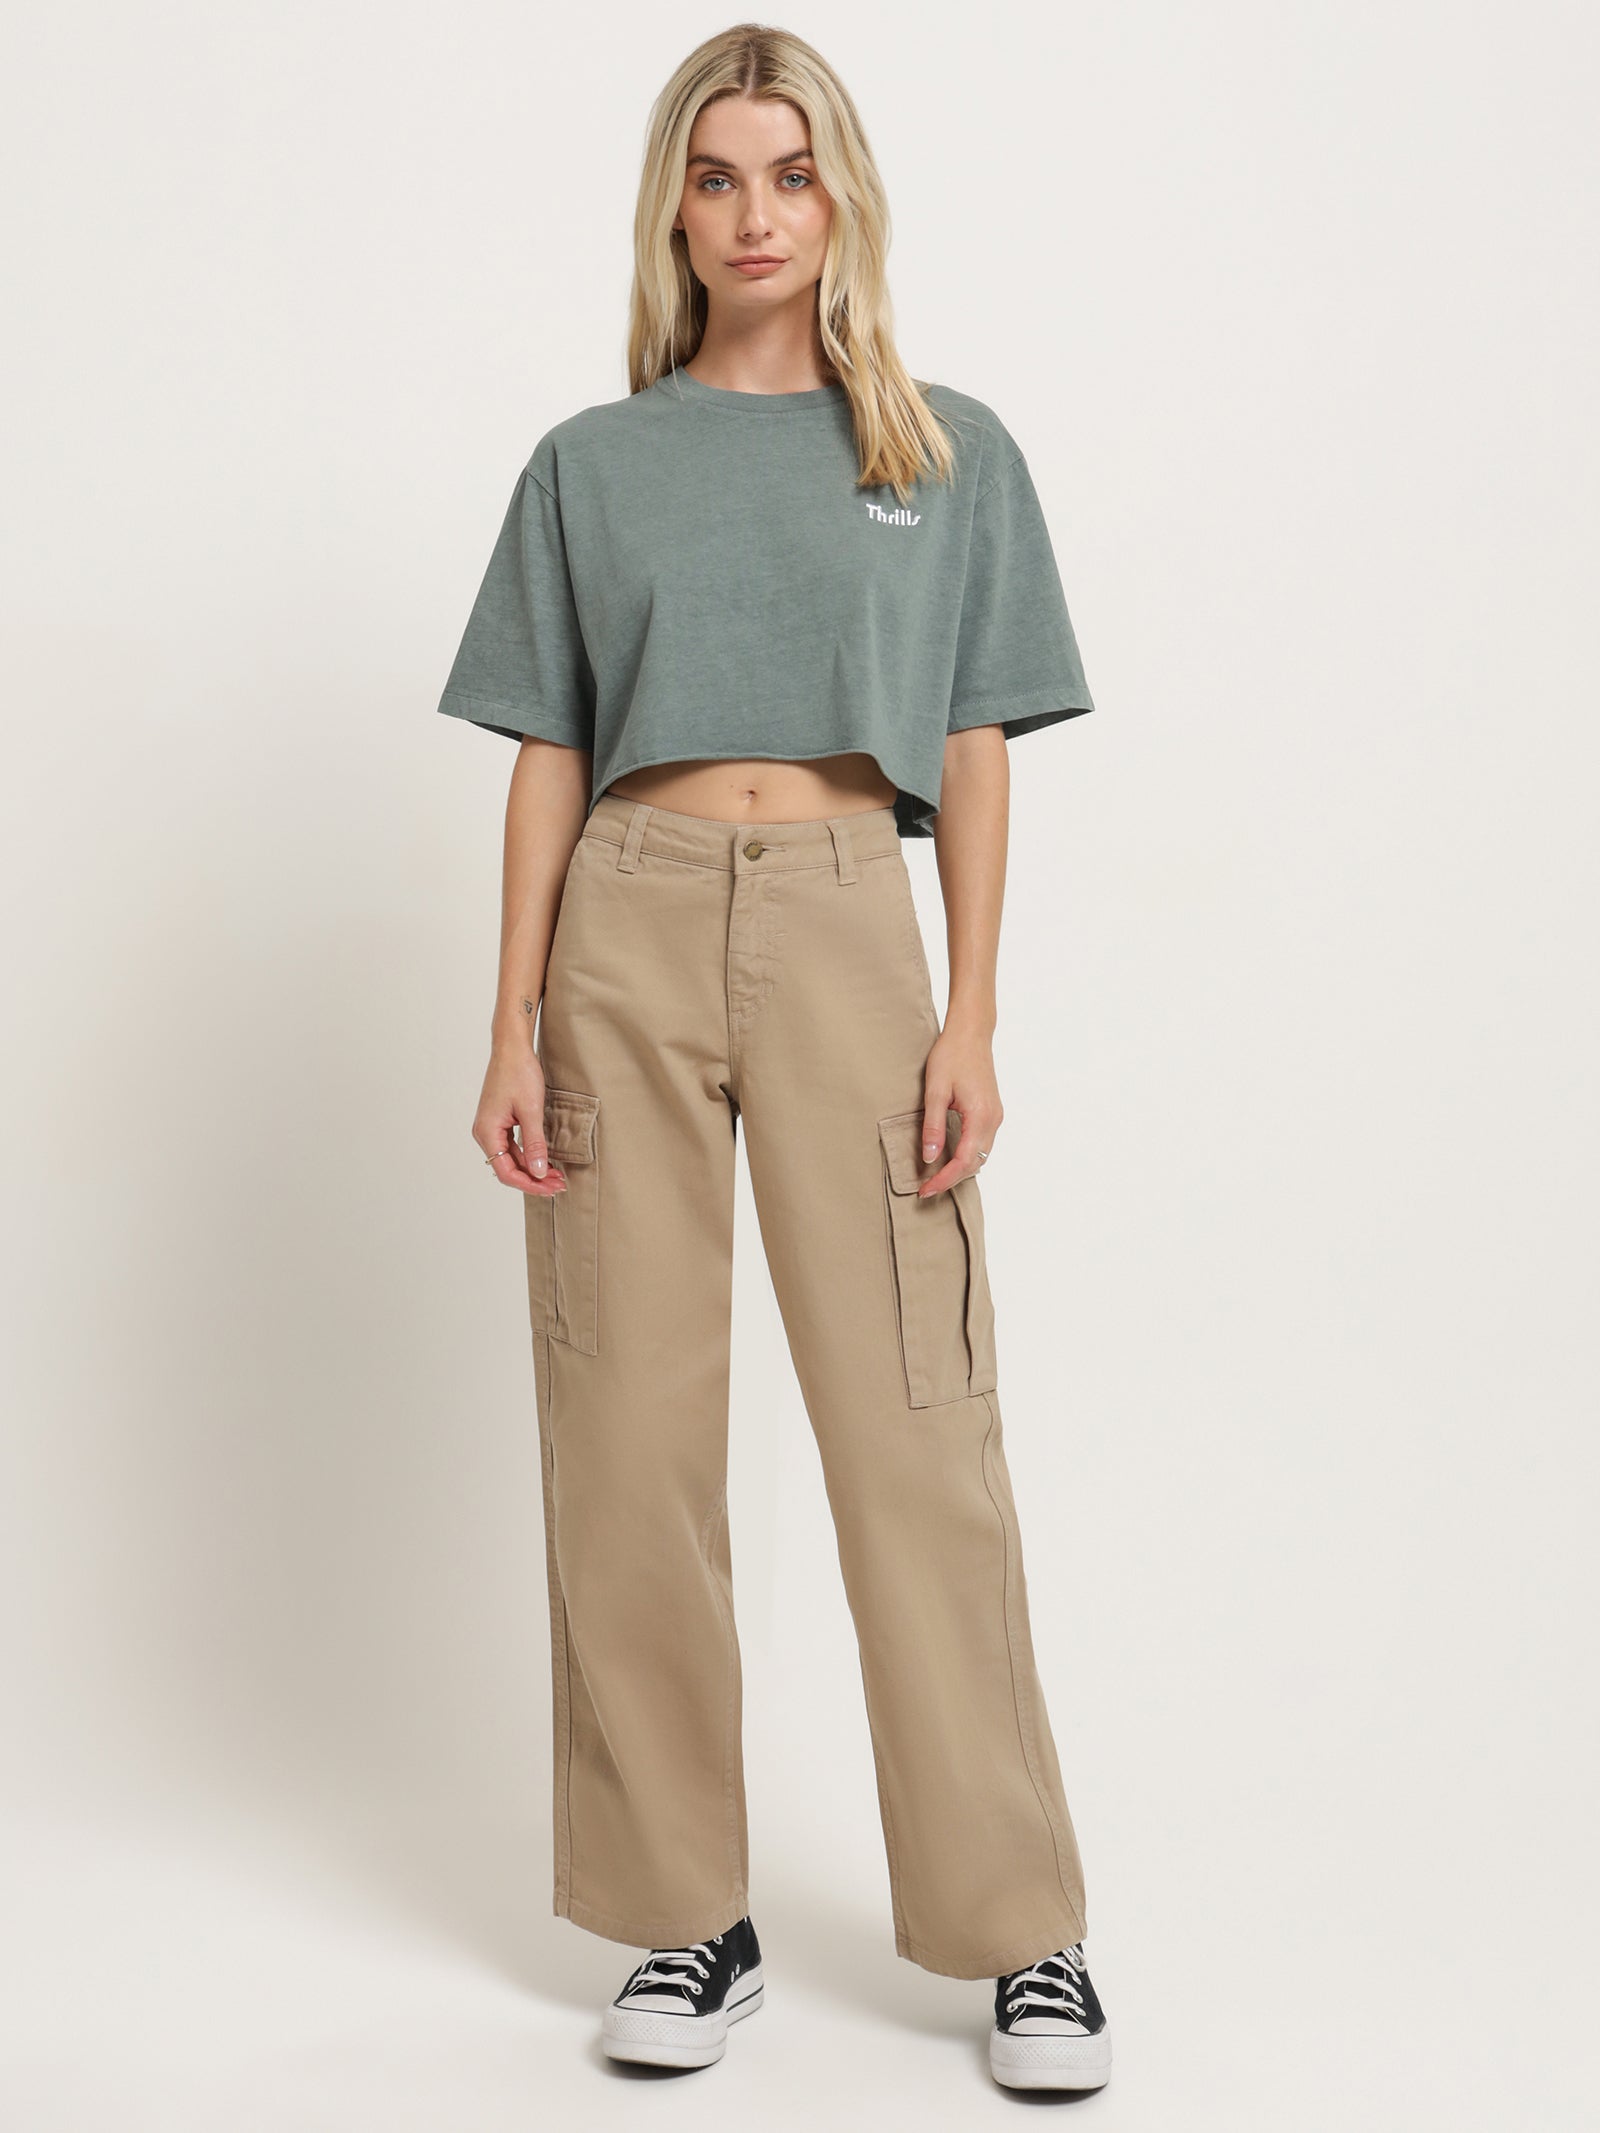 Zara Cargo Pants Trousers Wide Beige Size XS Bloggers Favorite 